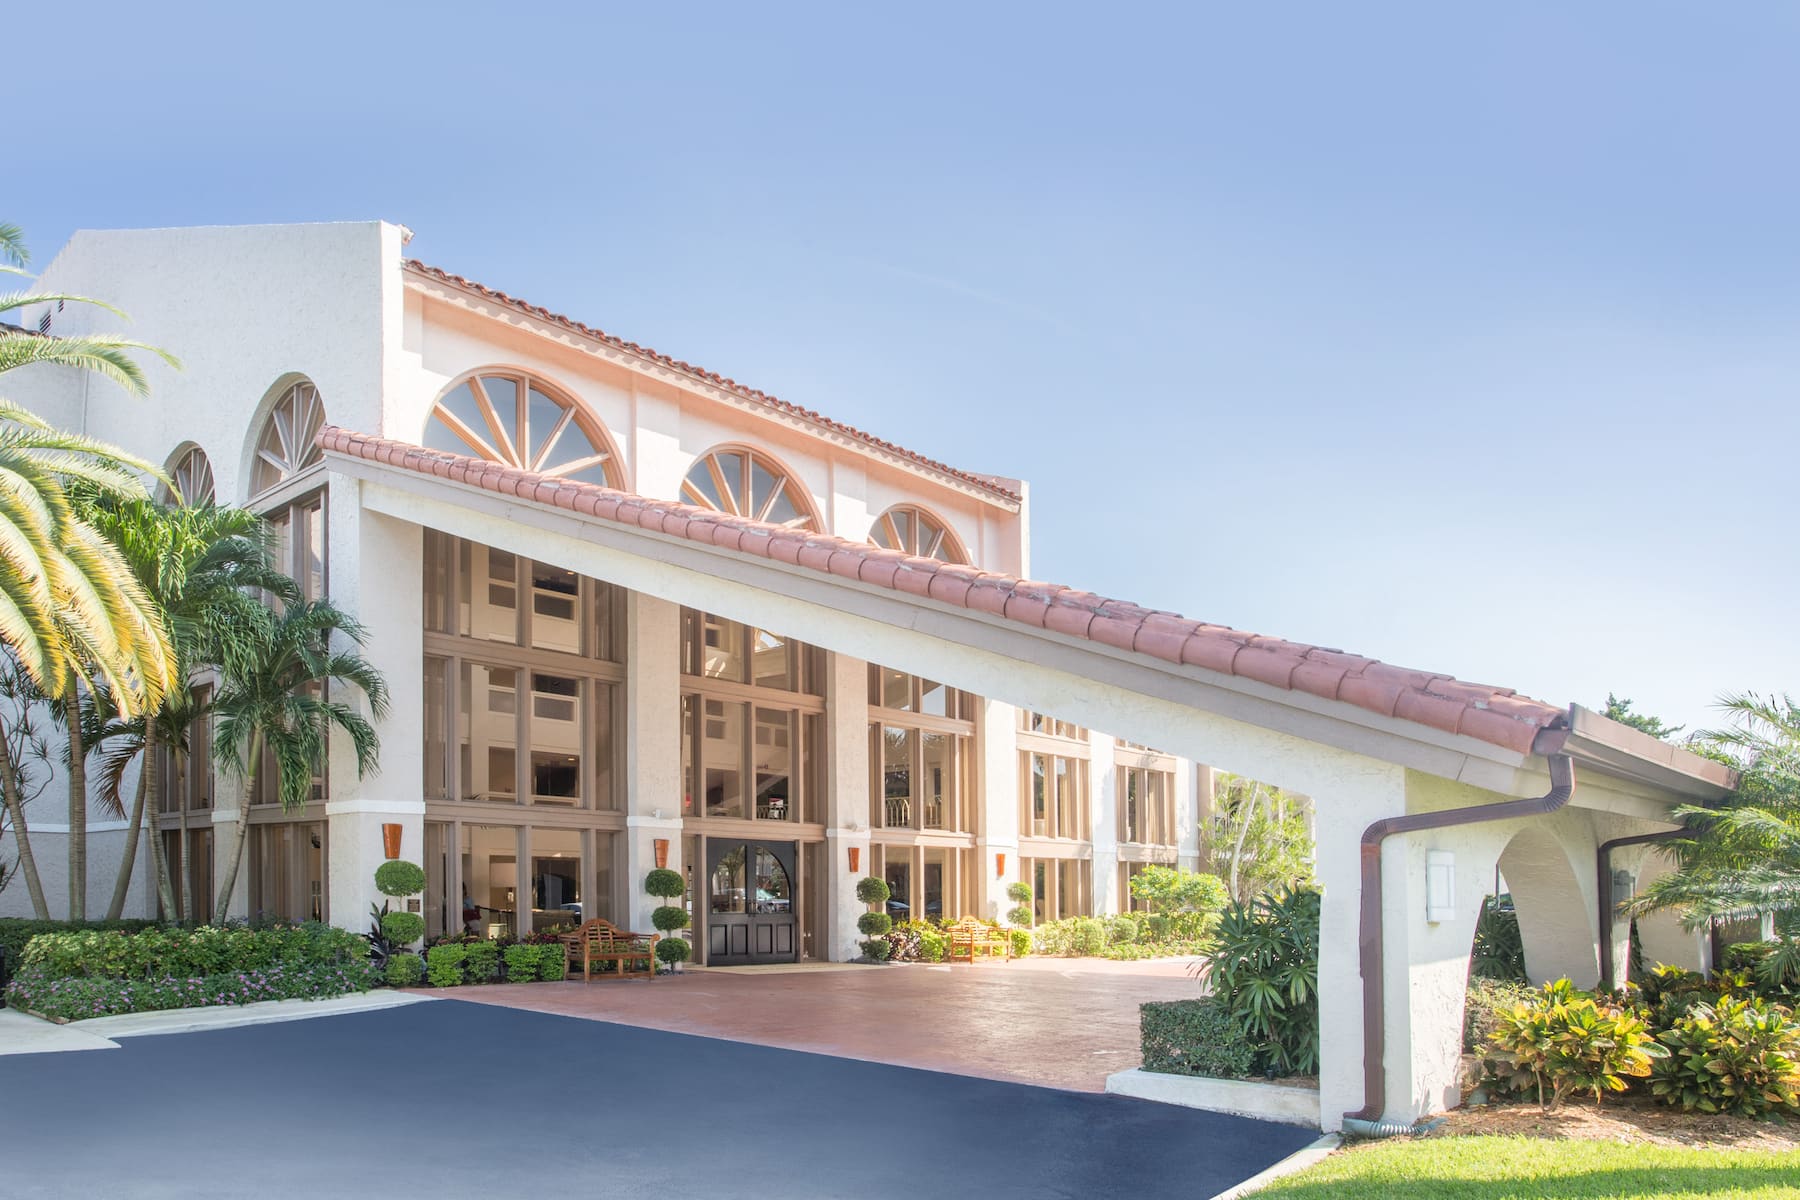 Wyndham Garden Hotel Boca Raton | Explore Palm Beach.